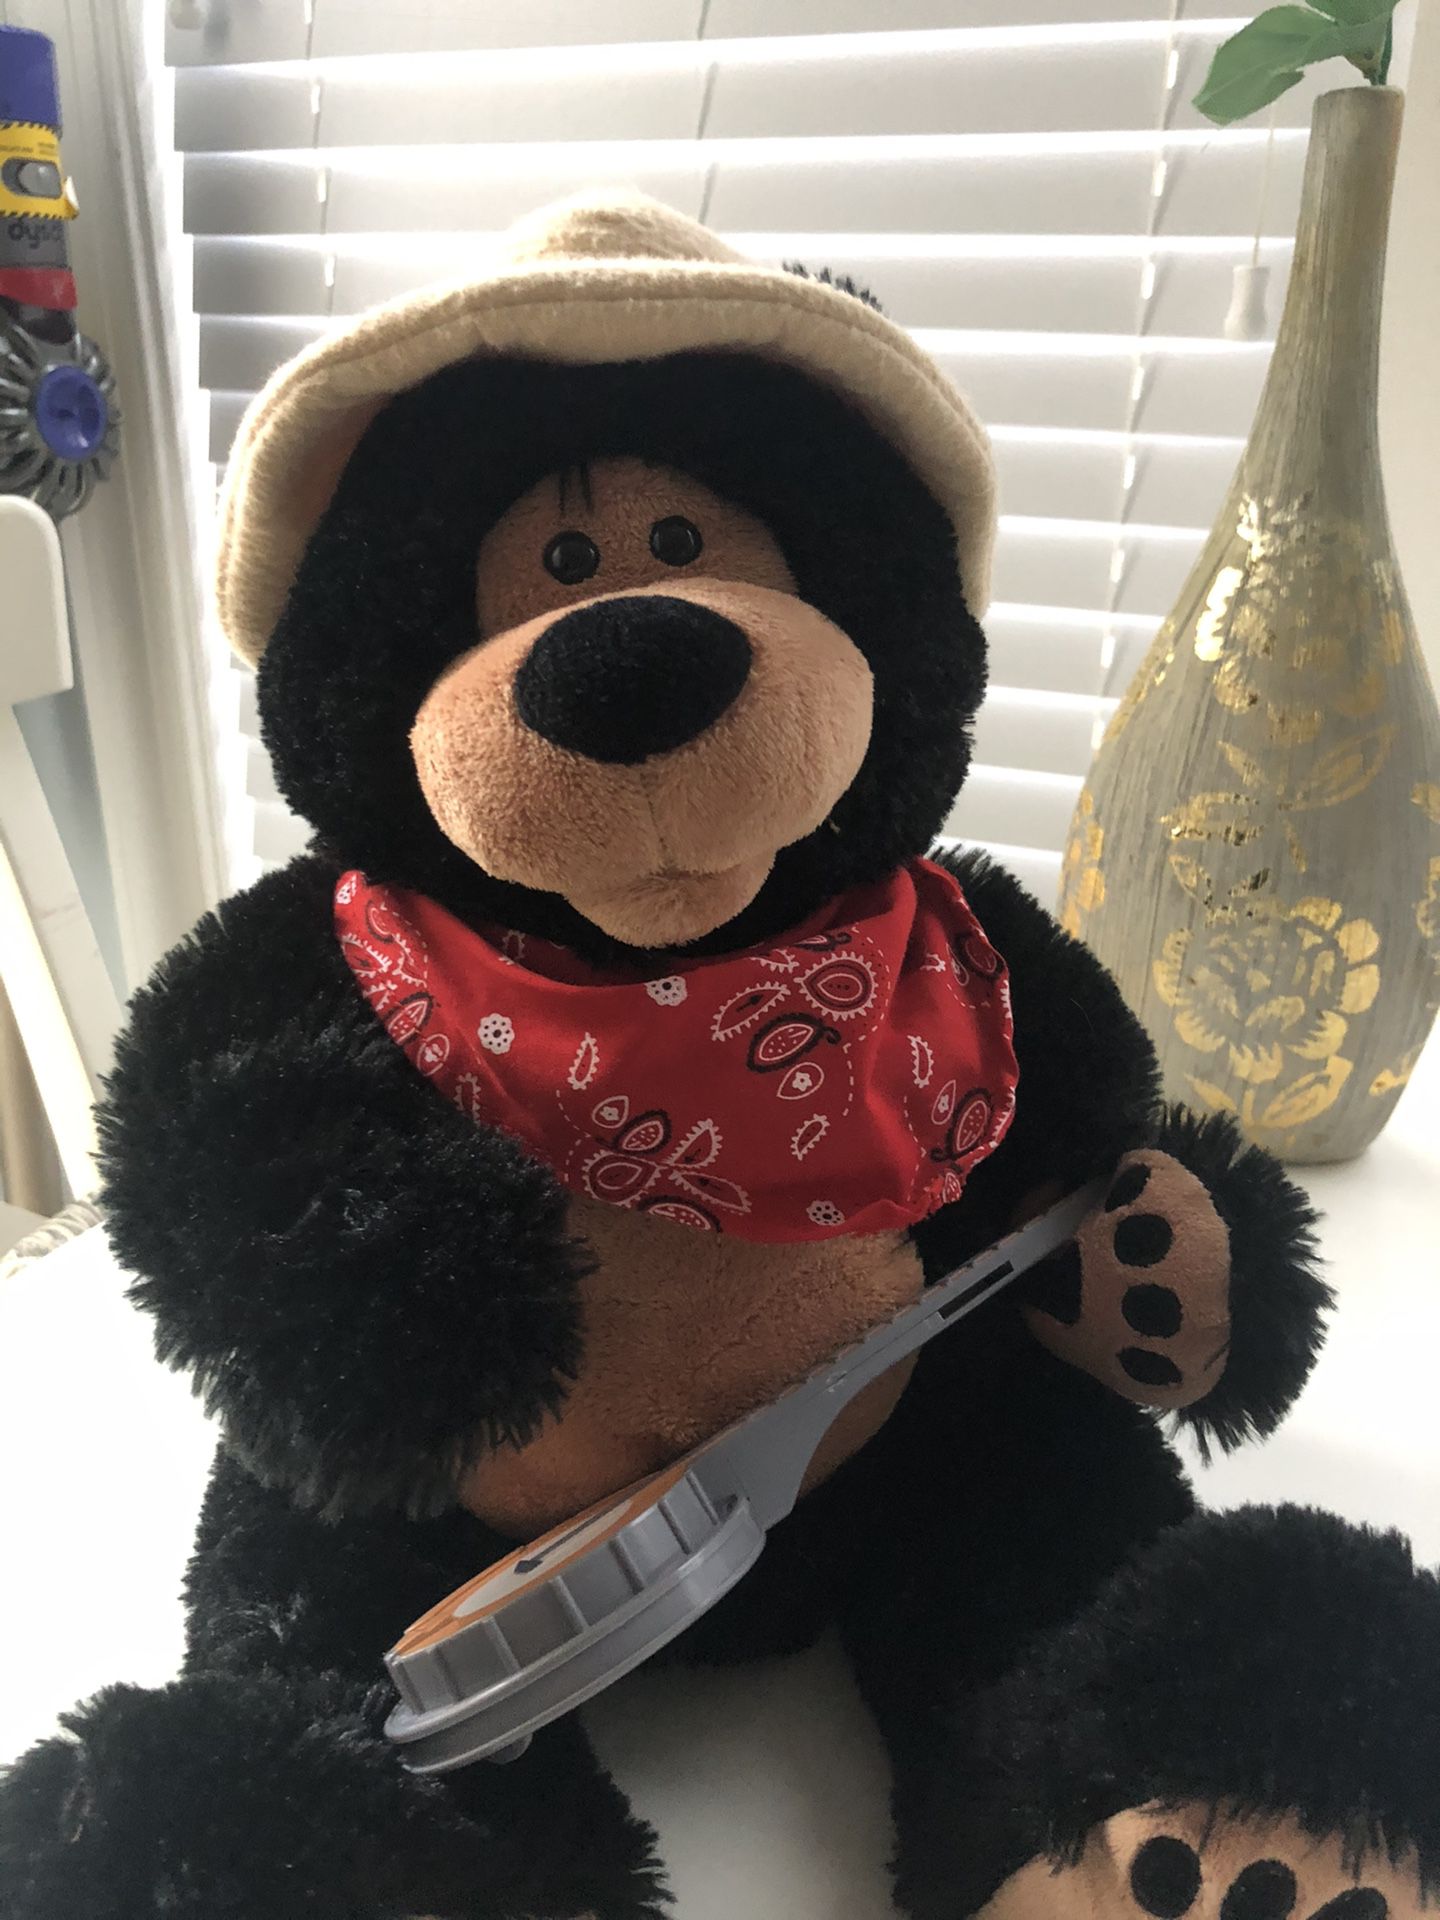 Russian Teddy Bear Toy/ Stuffed Animal